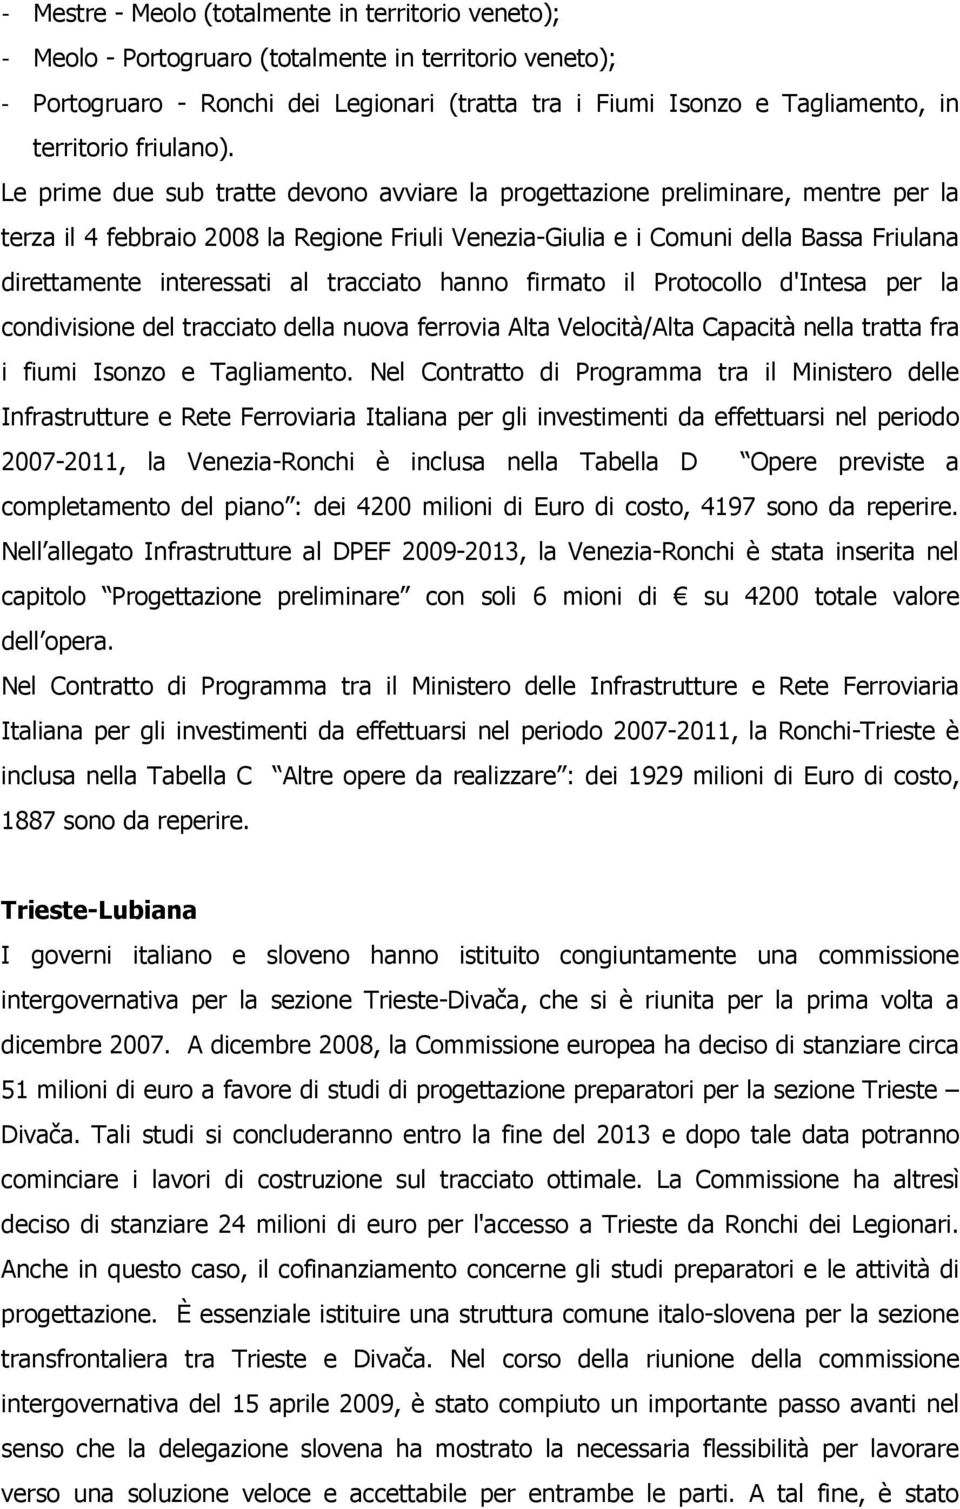 Le prime due sub tratte devono avviare la progettazione preliminare, mentre per la terza il 4 febbraio 2008 la Regione Friuli Venezia-Giulia e i Comuni della Bassa Friulana direttamente interessati